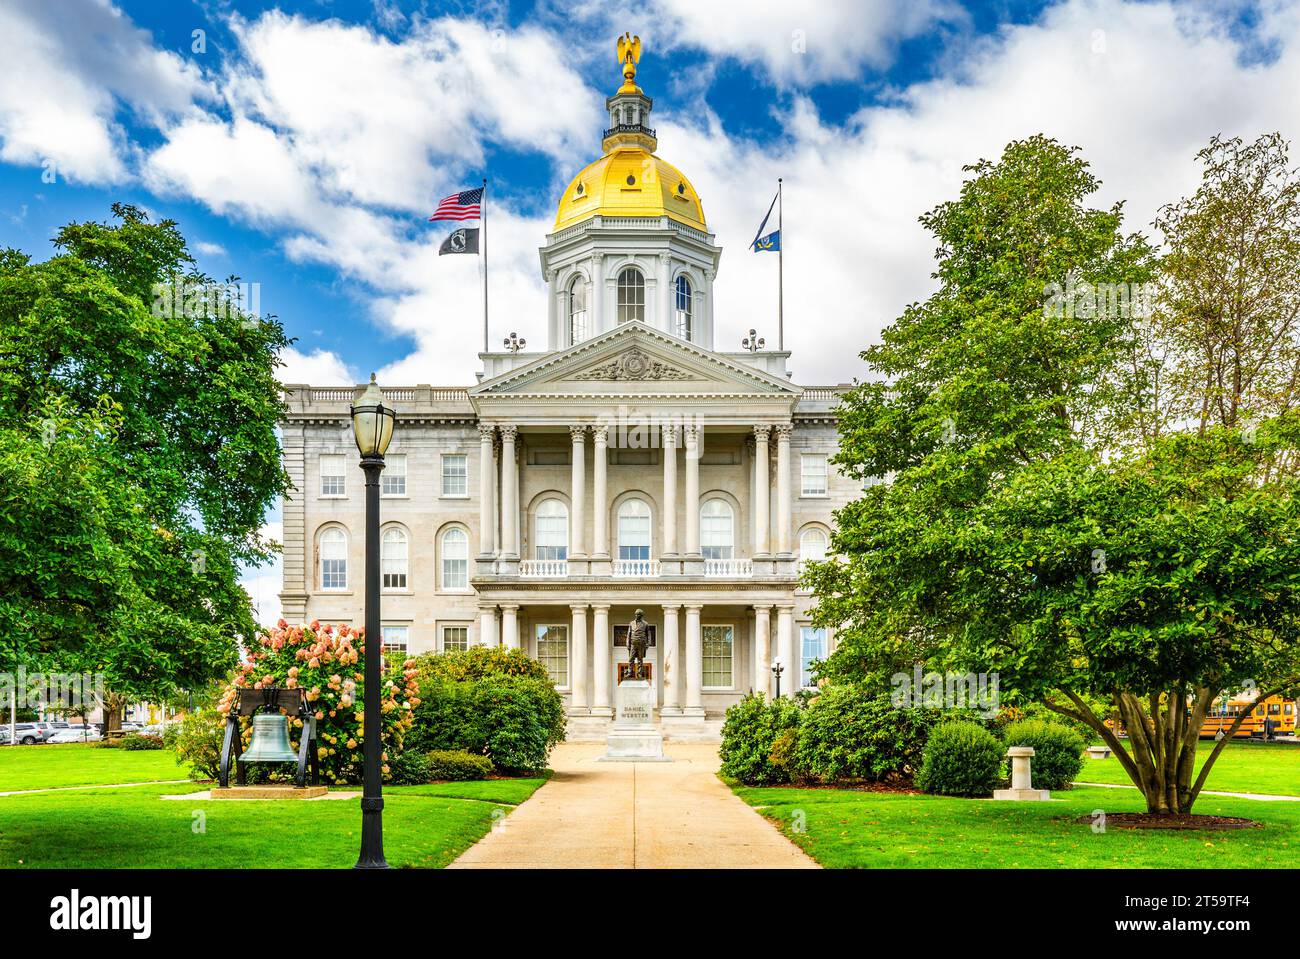 New Hampshire State House, à Concord, par un matin ensoleillé. Le capitole abrite la Cour générale du New Hampshire, le gouverneur et le Conseil exécutif. Banque D'Images